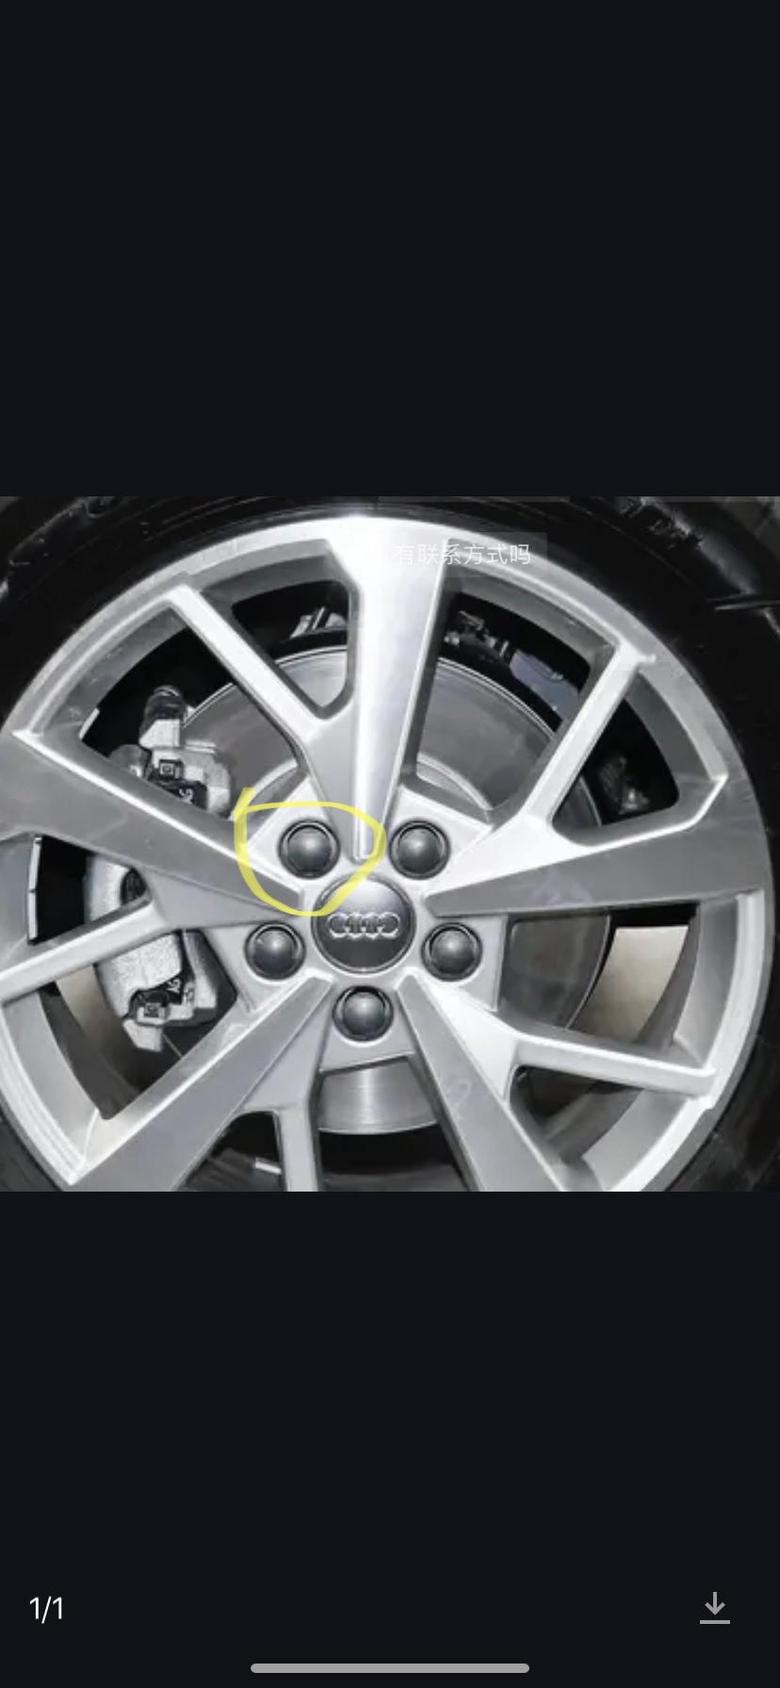 奥迪q3 我的车子4个轮胎每个轮胎有一个螺帽都能用手转的动这正常吗？